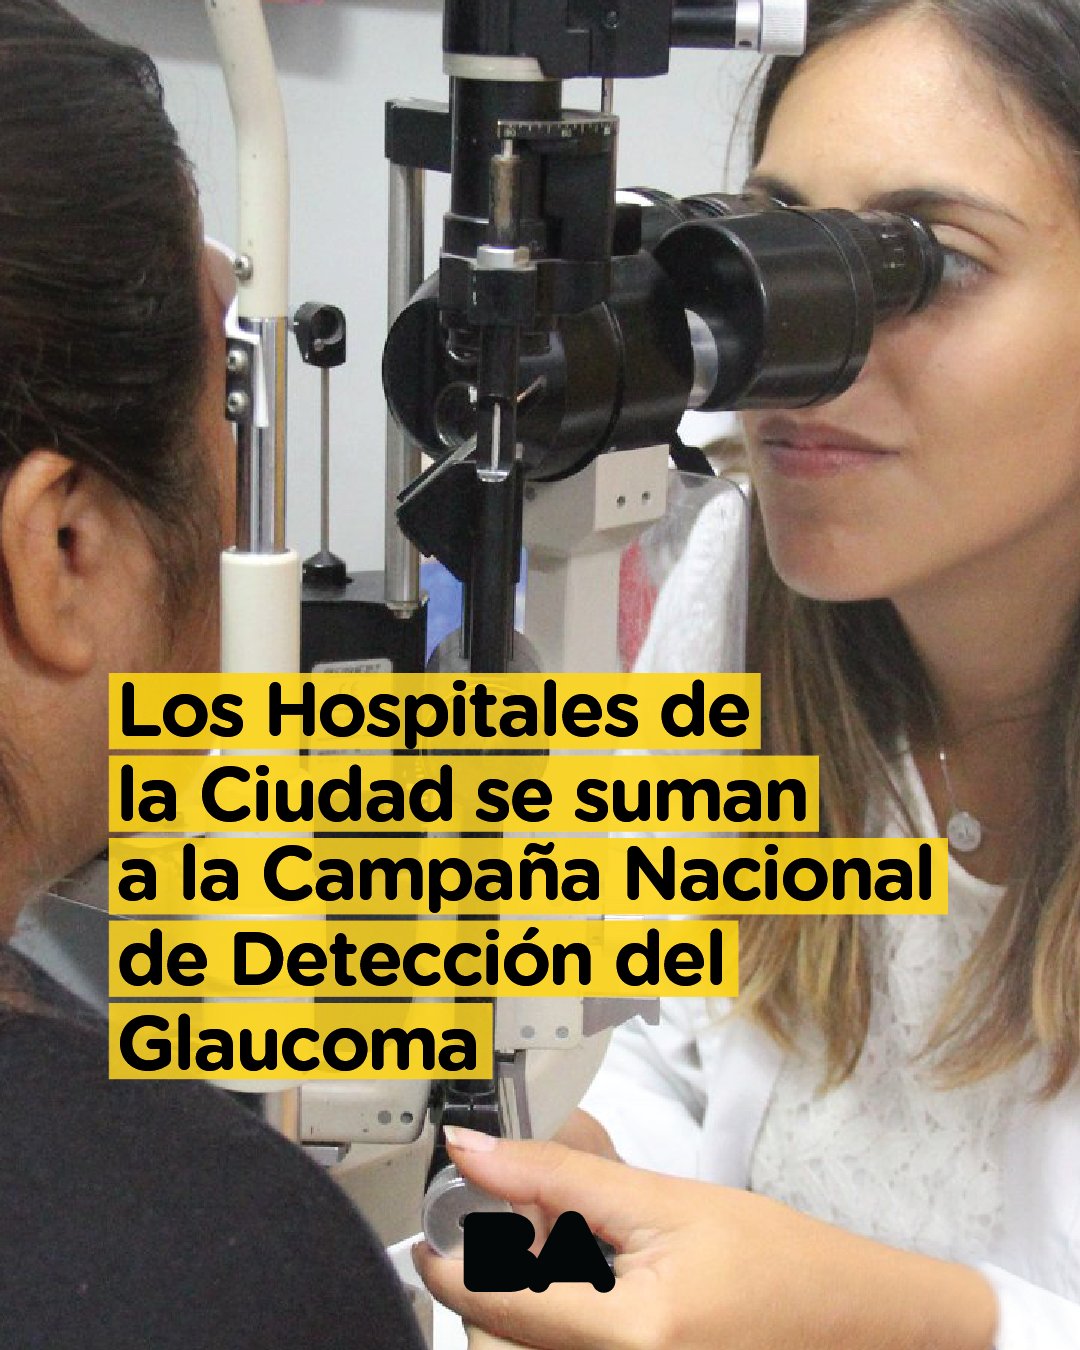 BA Salud on X: "El glaucoma es una enfermedad asintomática que daña el  nervio óptico y produce la pérdida progresiva de la visión. Por eso es tan  importante su diagnóstico a través